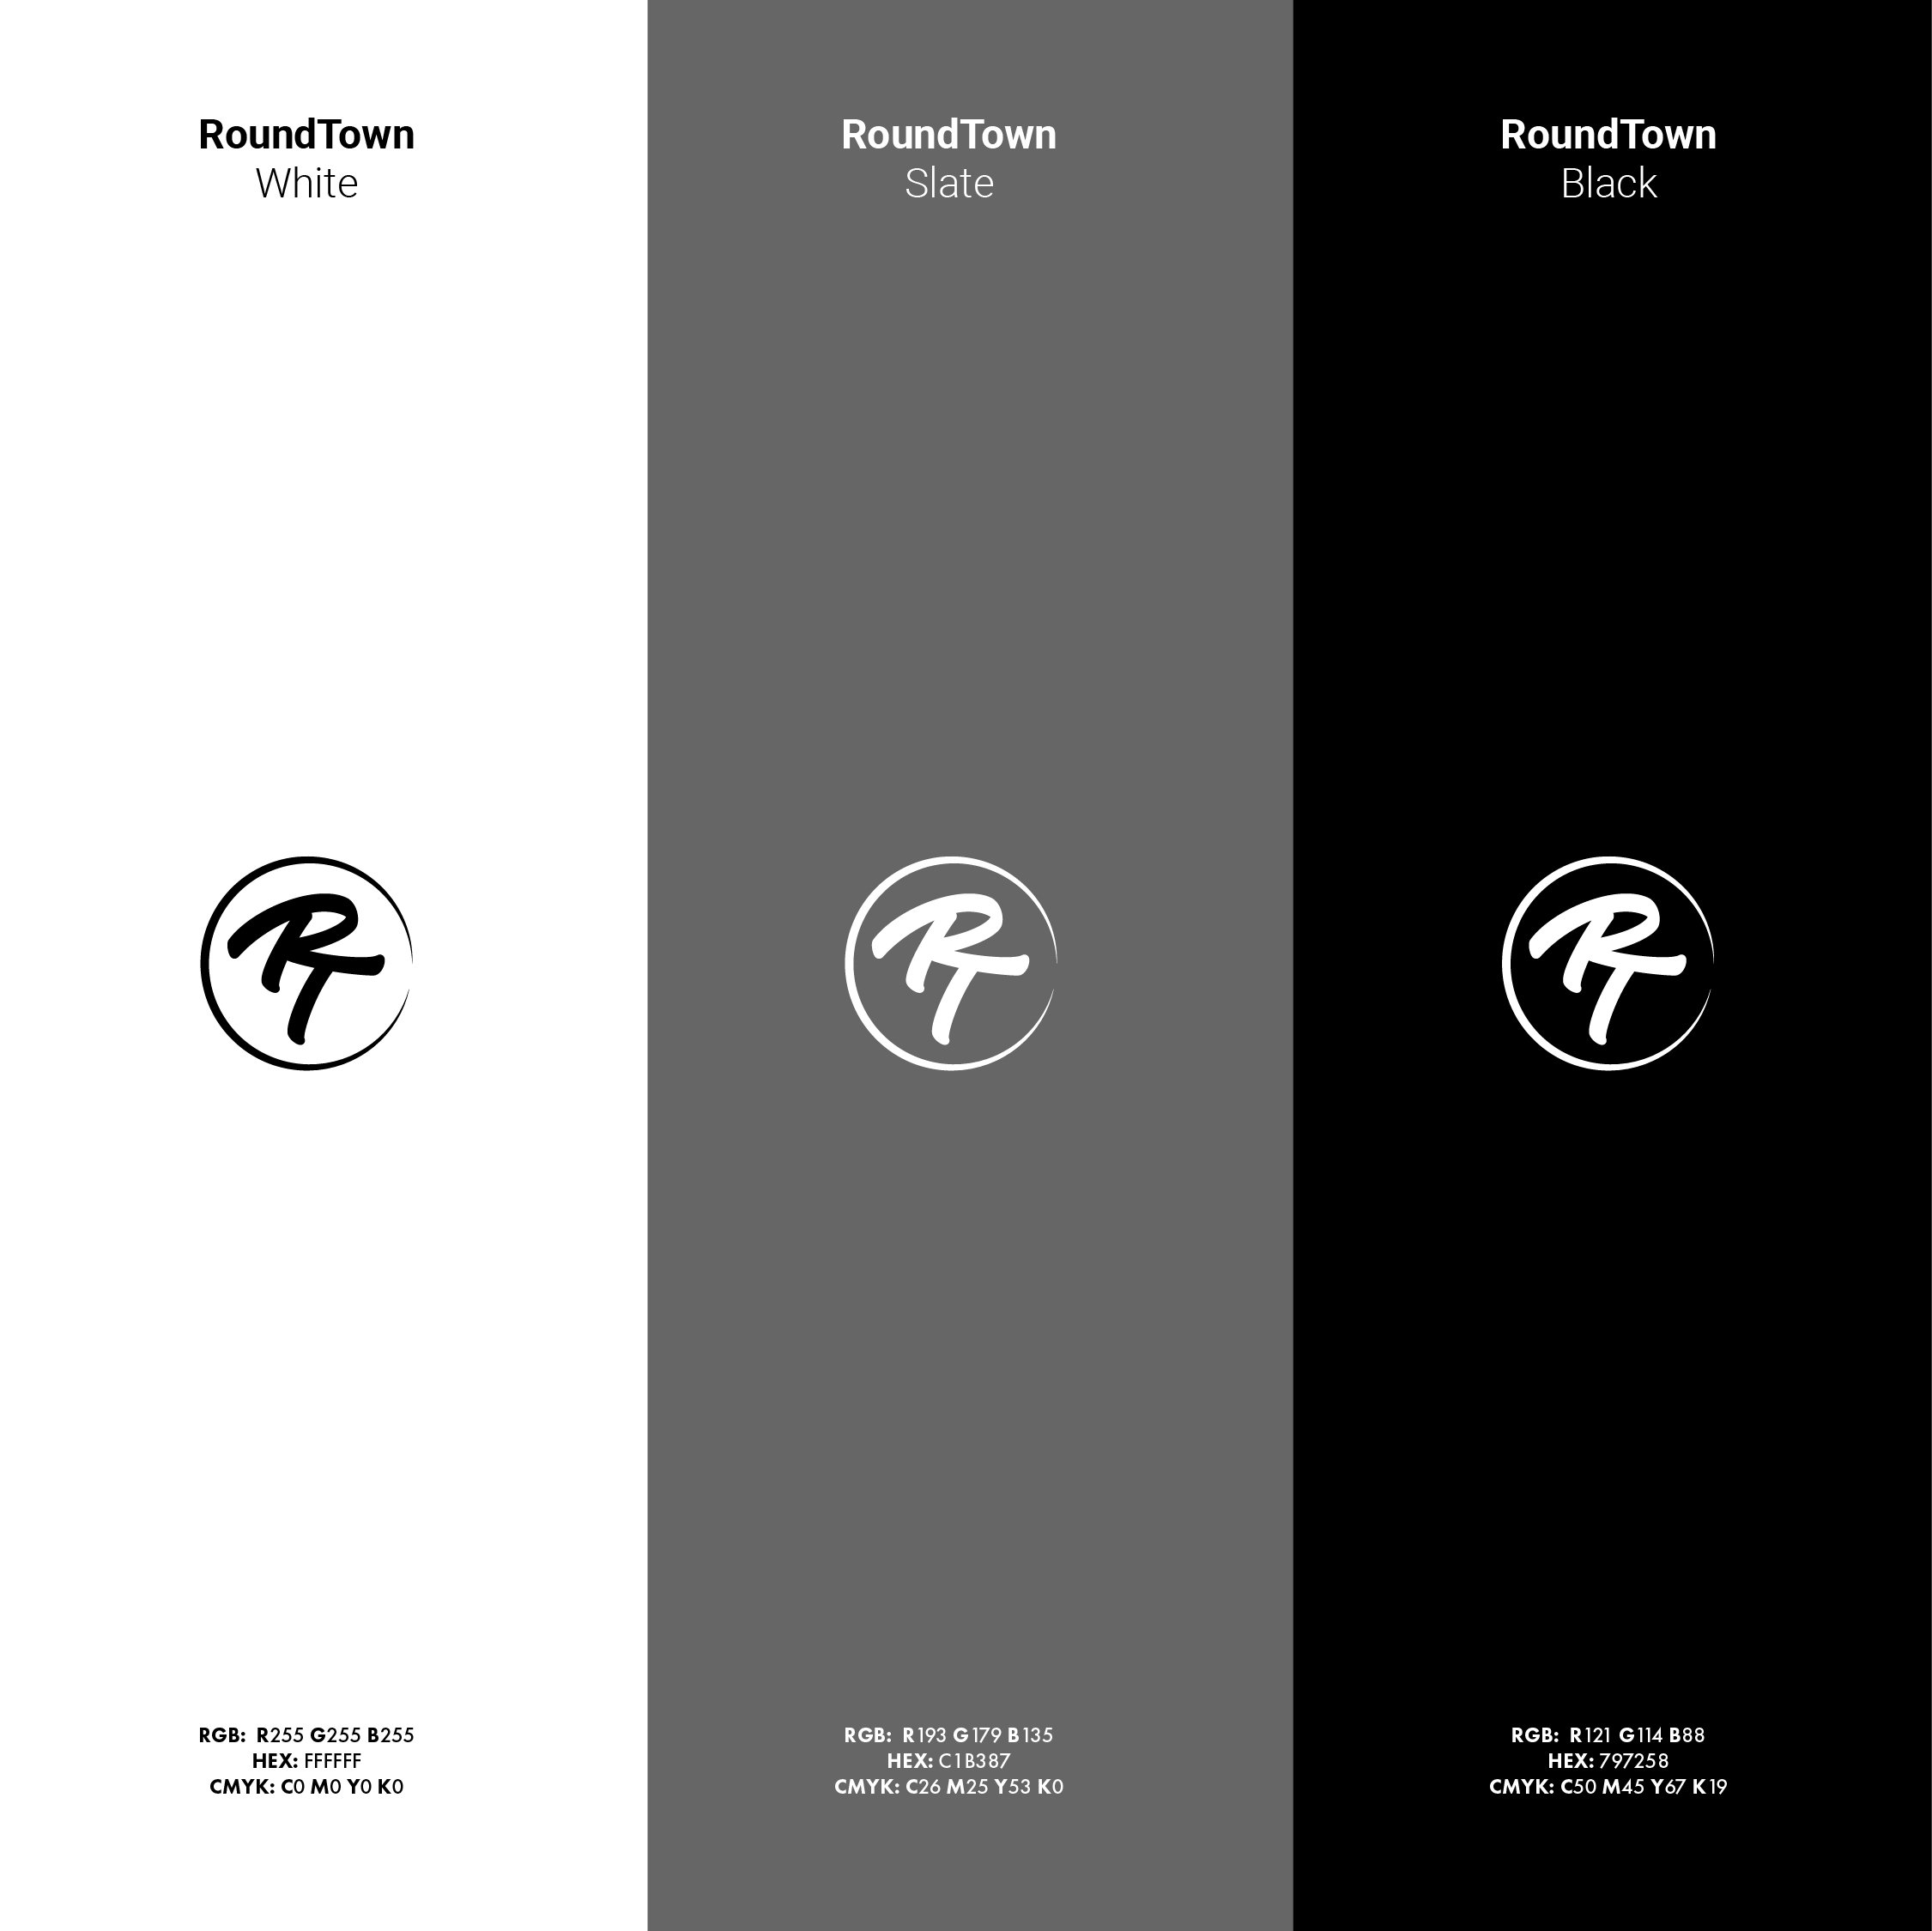 JoshStevensDesign-LogoDesigner-ByronBay-RoundTown-02.jpg